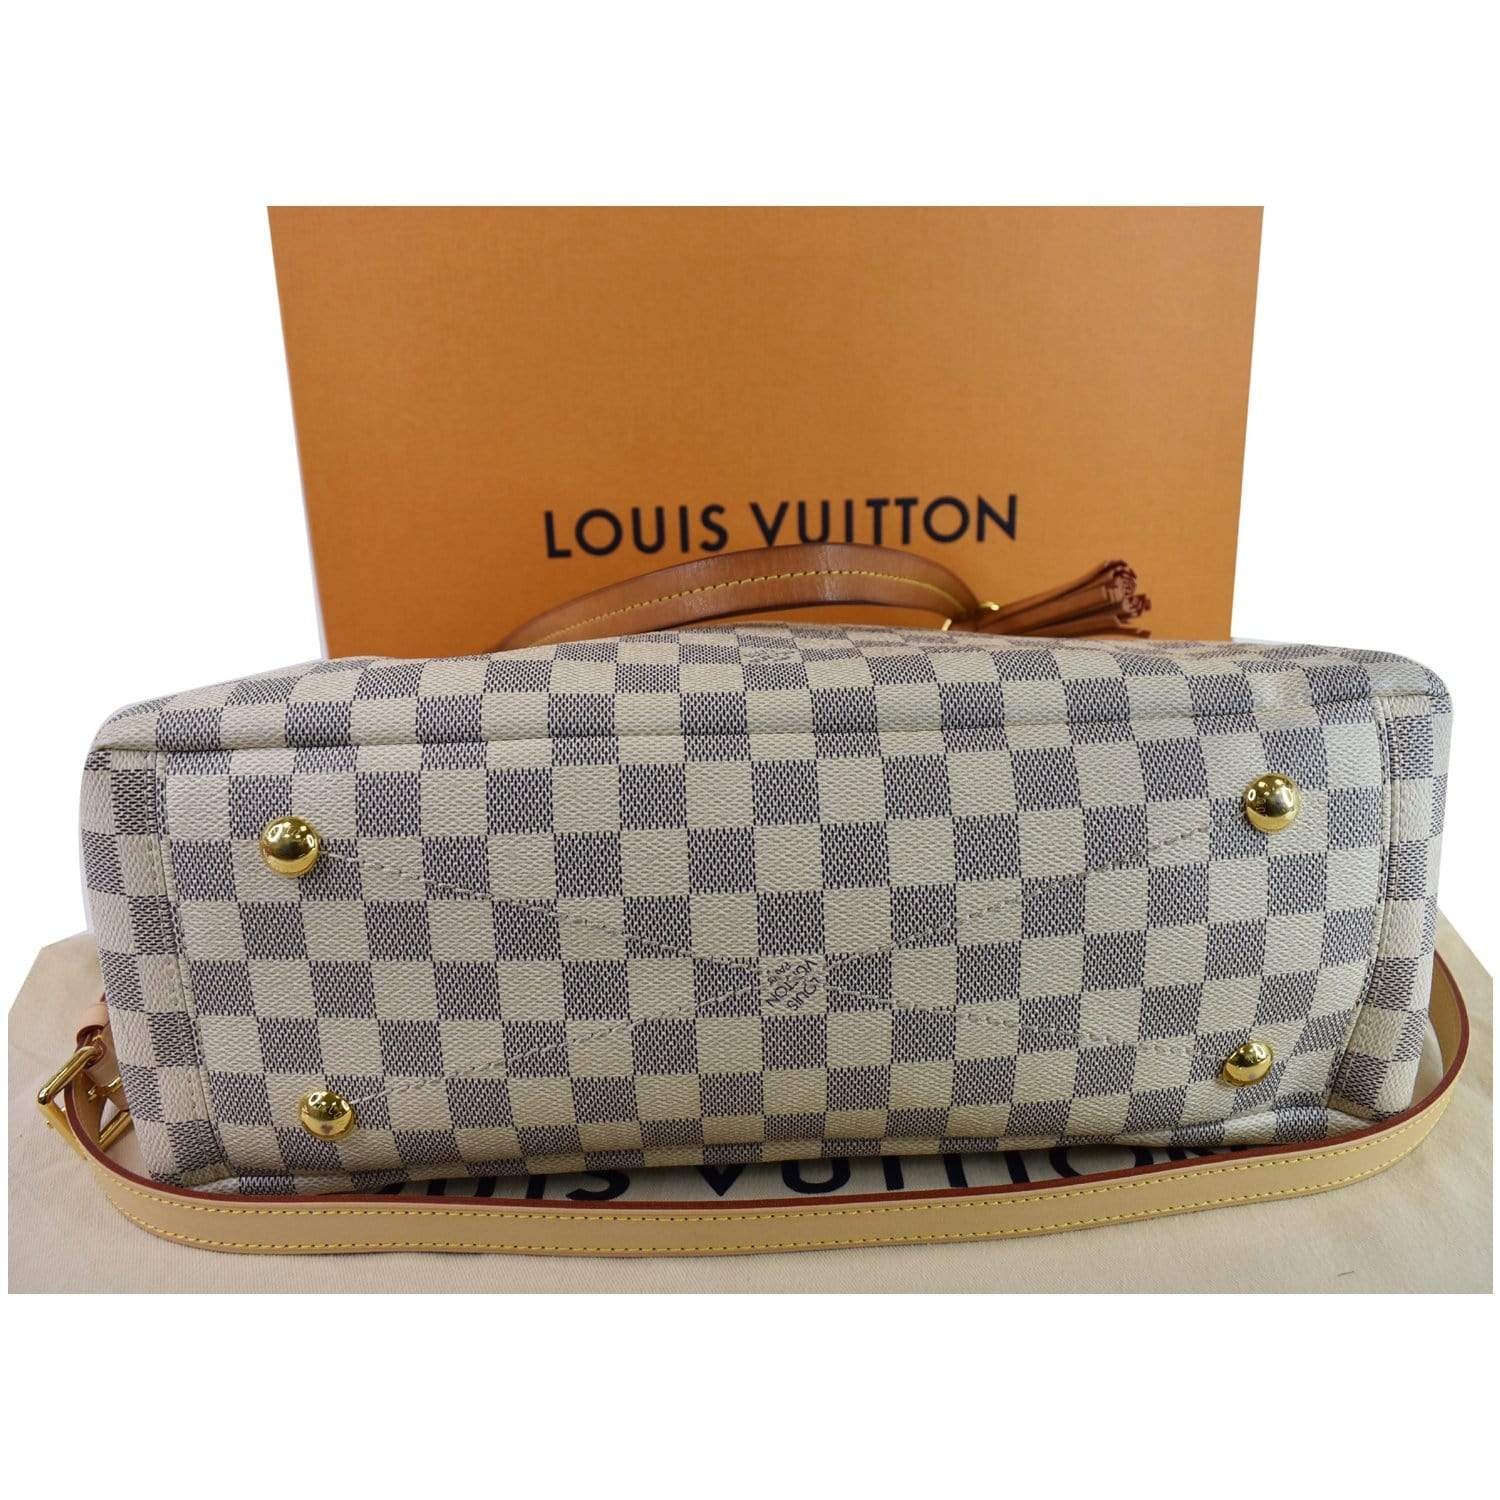 Authentic Louis Vuitton Damier Azur Lymington for Sale in Plano, TX -  OfferUp